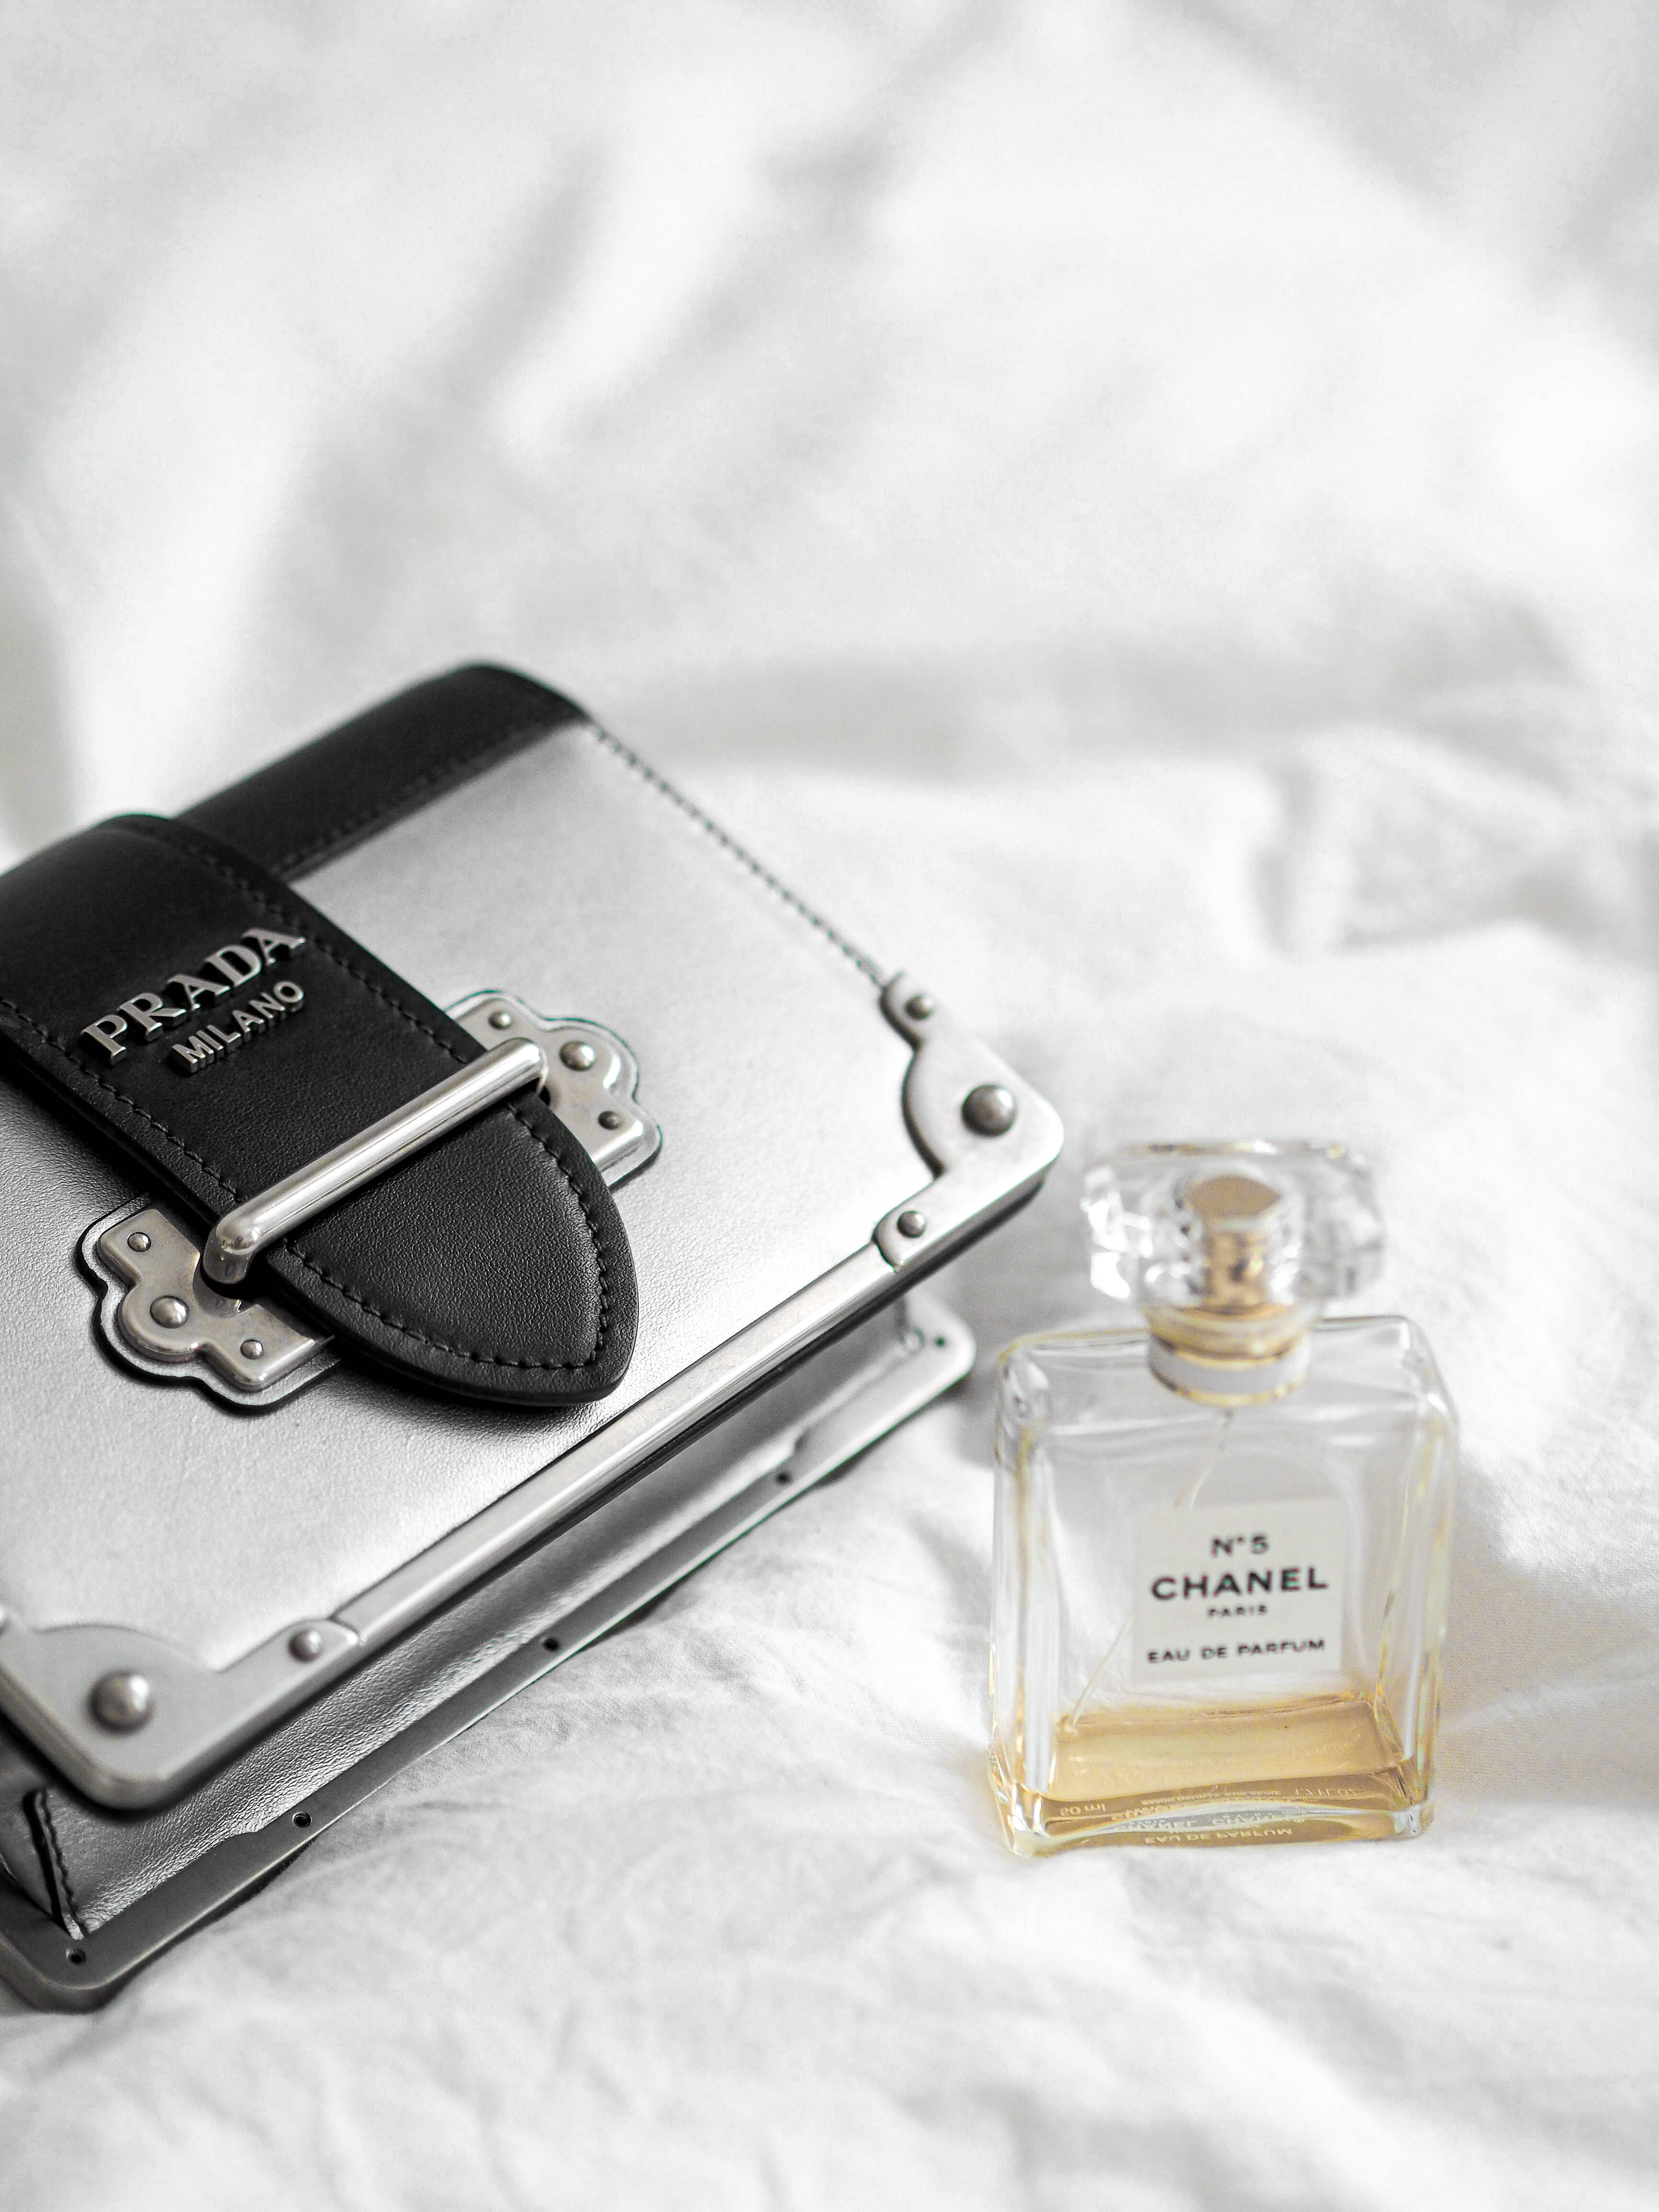 Download Prada Bag Chanel Perfume Wallpaper | Wallpapers.com